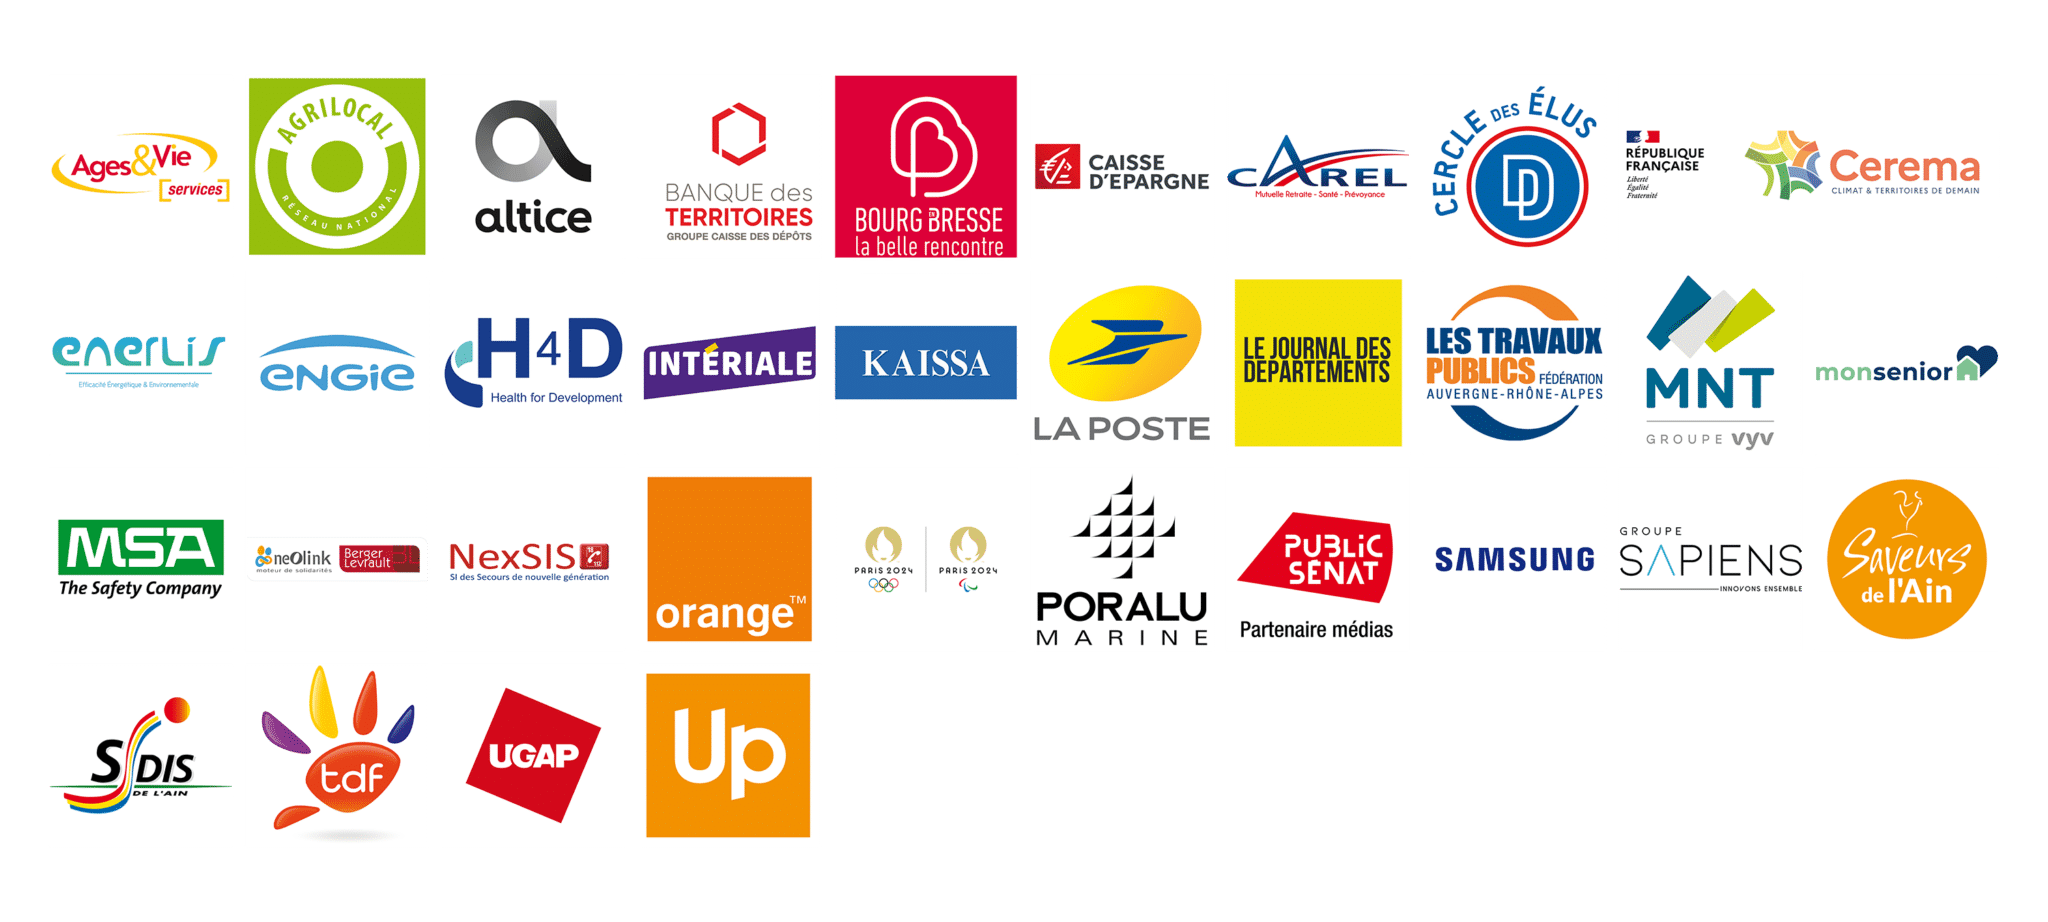 Partenaires des Assises des Départements de France 2021 Bourg en Bresse